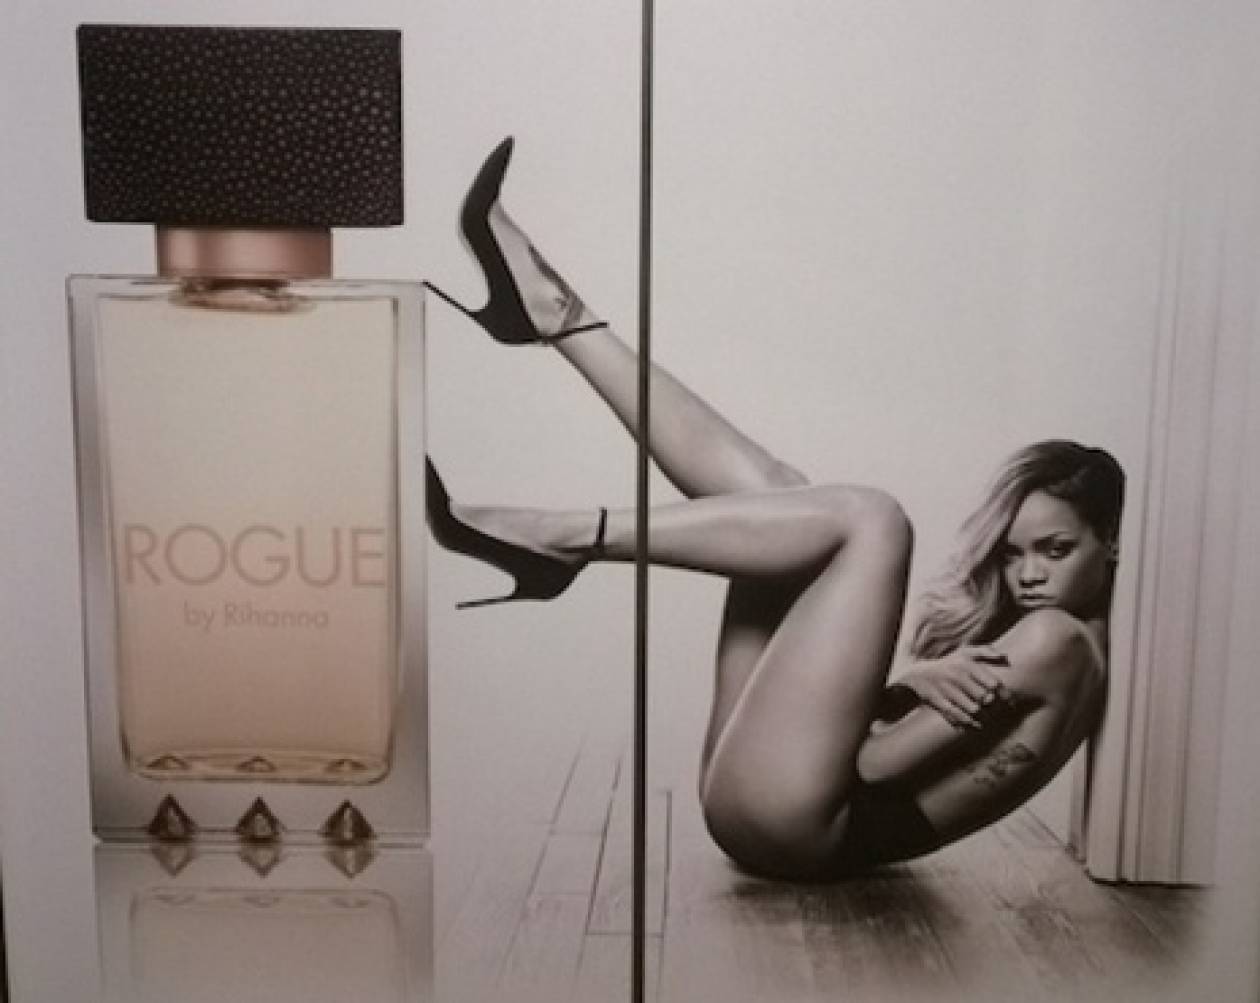 Απαγόρευσαν αφίσα με τη Rihanna λόγω... σεξουαλικών υπονοούμενων!